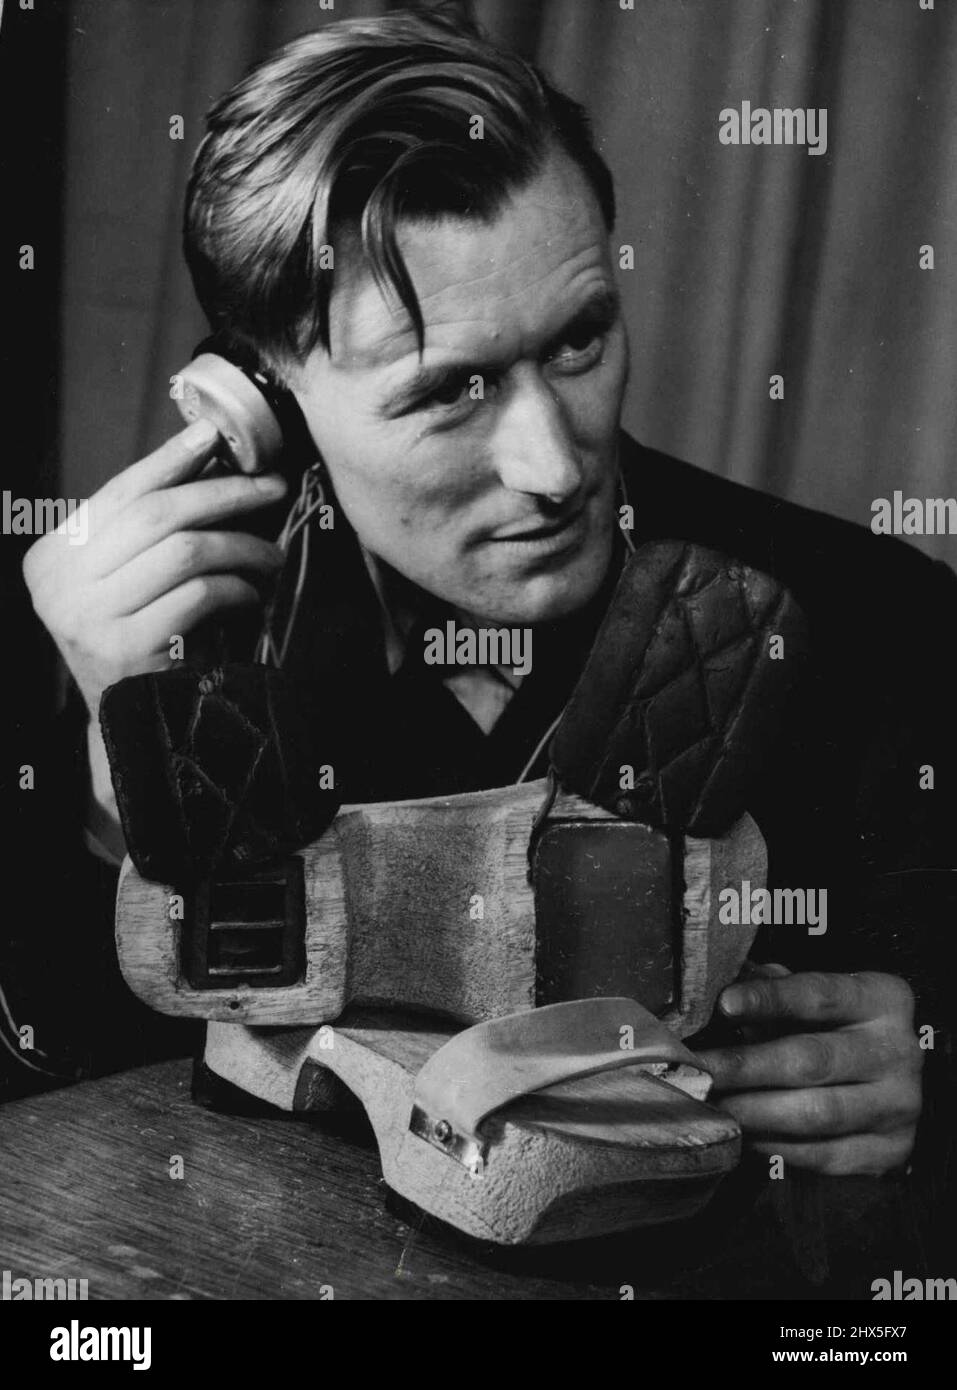 Ingegnoso - questo set di ricezione radio utilizzato da POW in Giappone è in mostra nella fiera Air Force Week di Melbourne. Le parti vitali sono state nascoste in zoccoli di legno di un'aviatore. Maggio 27, 1948. Foto Stock